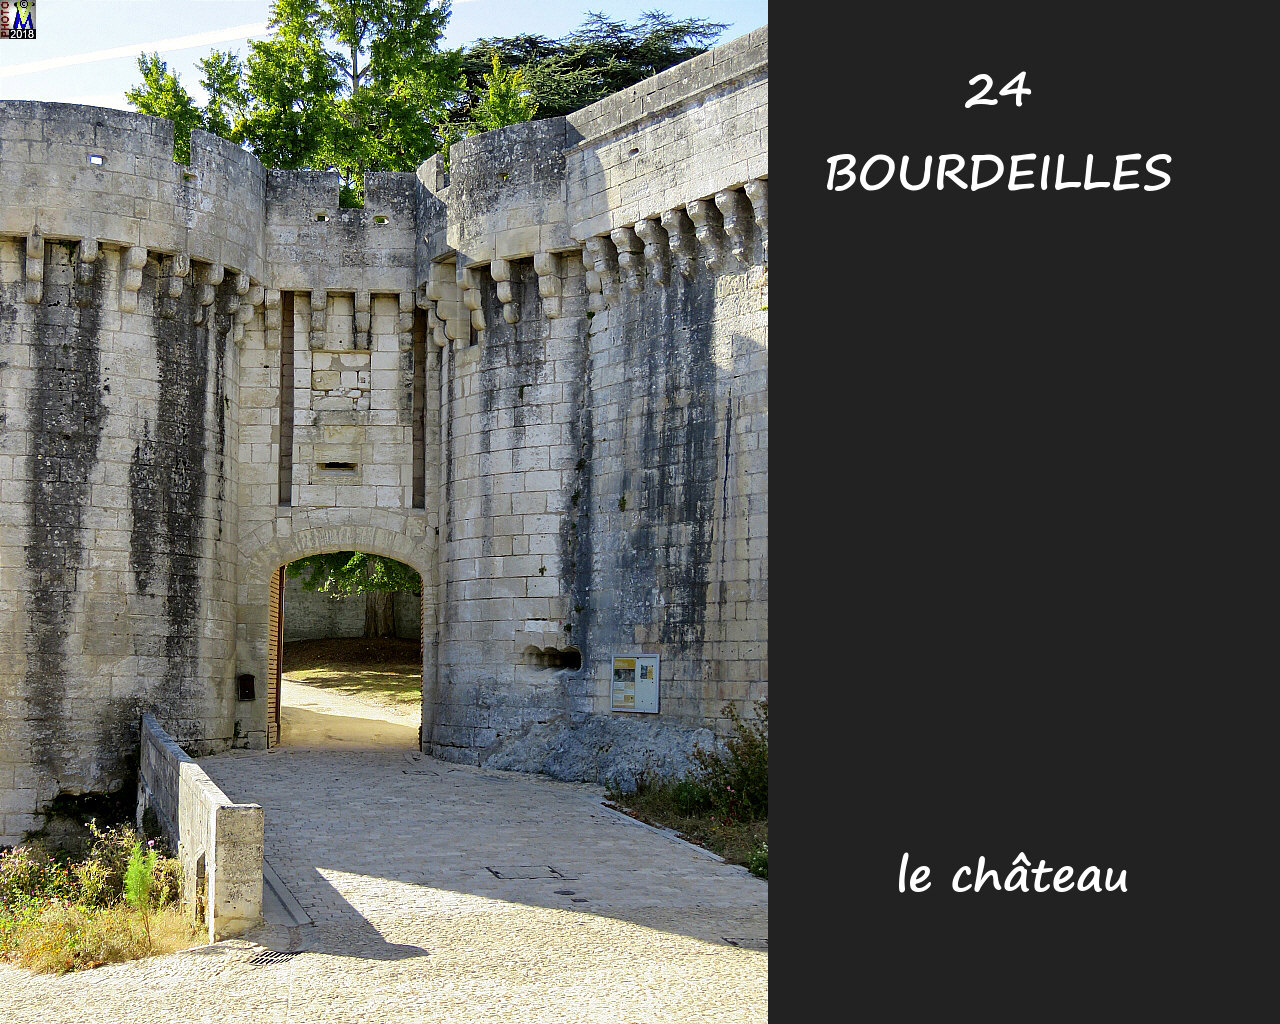 24BOURDEILLES_chateau_1020.jpg